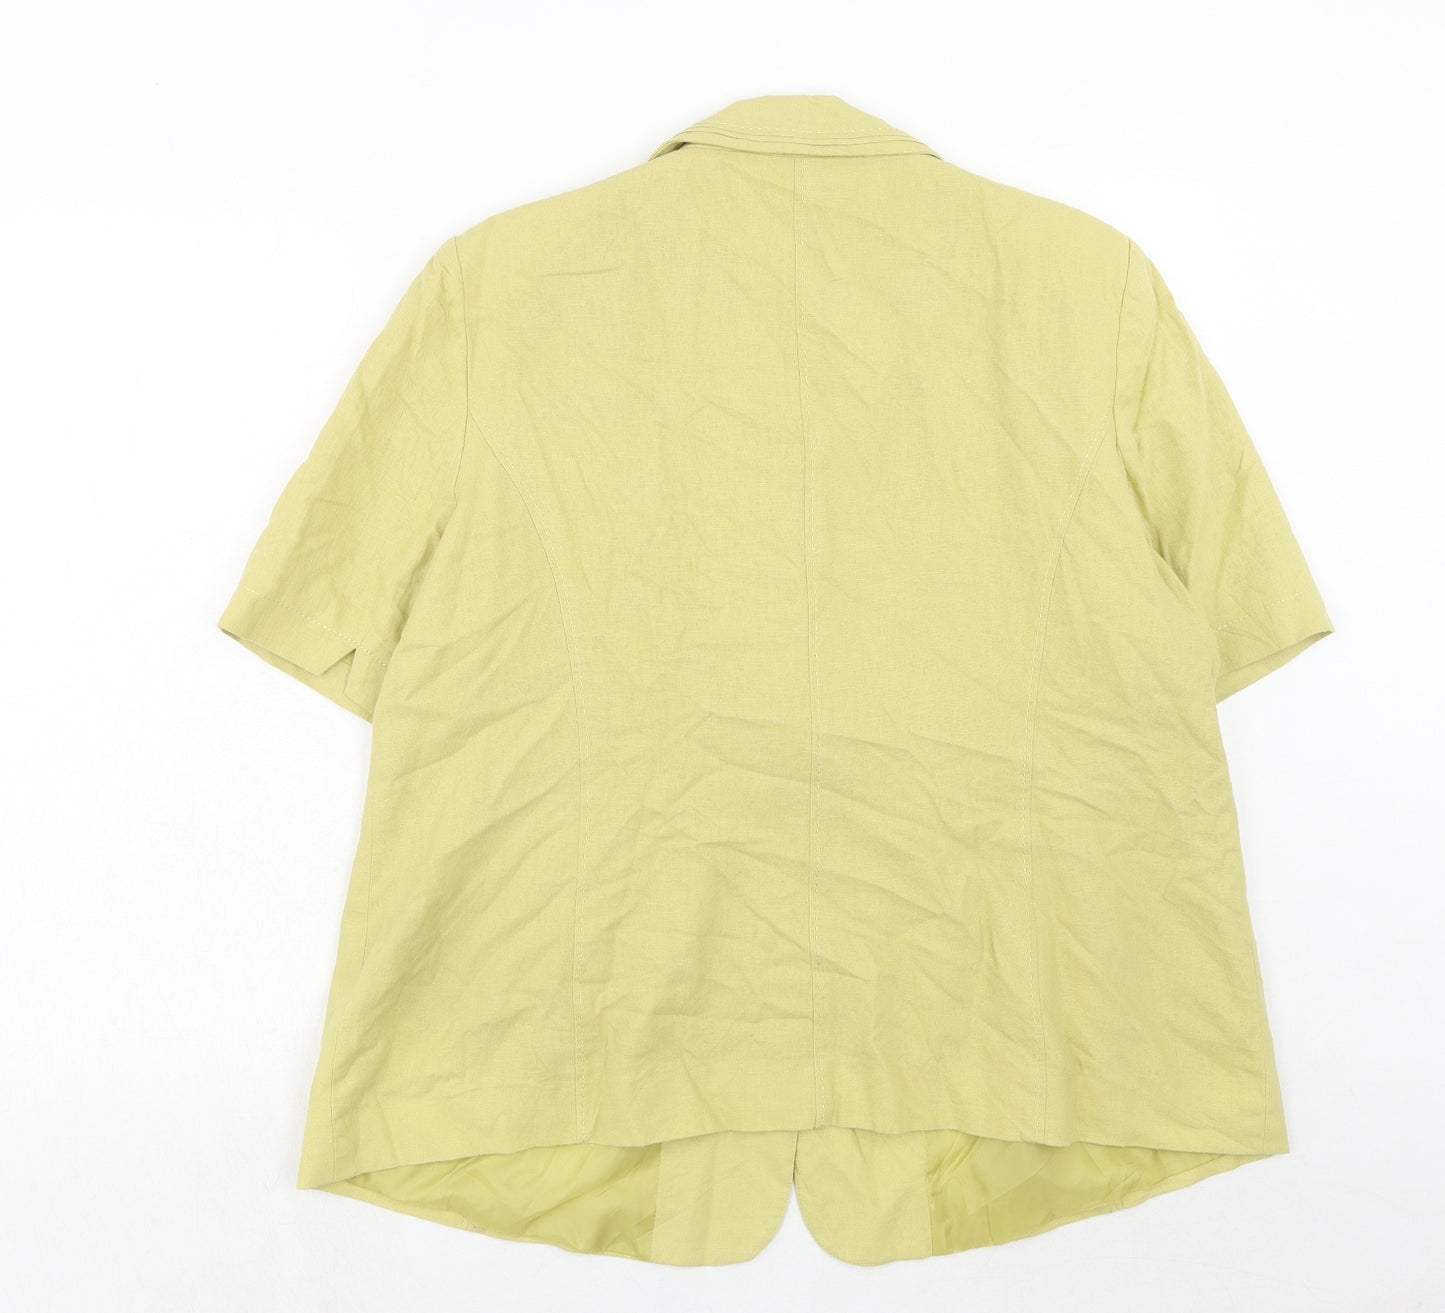 Bonmarché Womens Yellow Linen Jacket Blazer Size 22